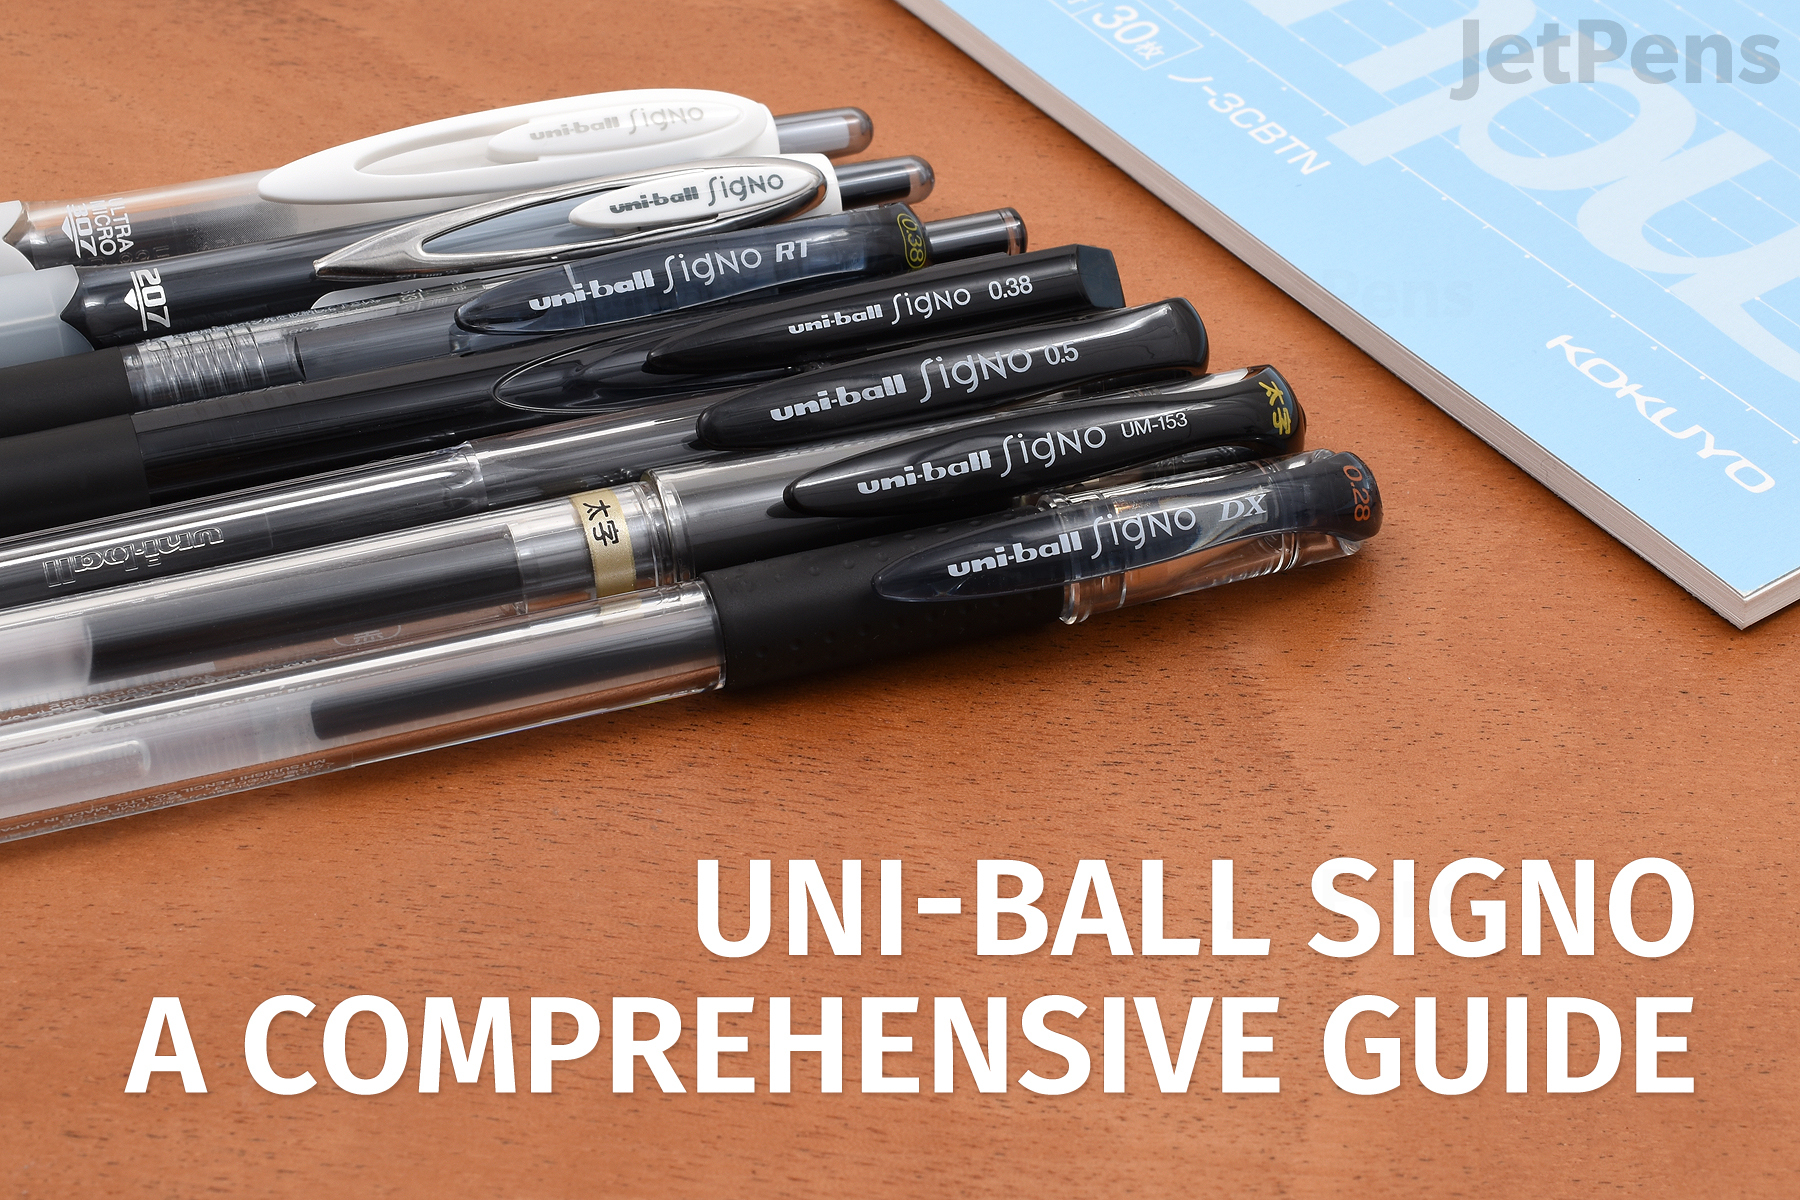 Uni-ball Signo: A Comprehensive Guide